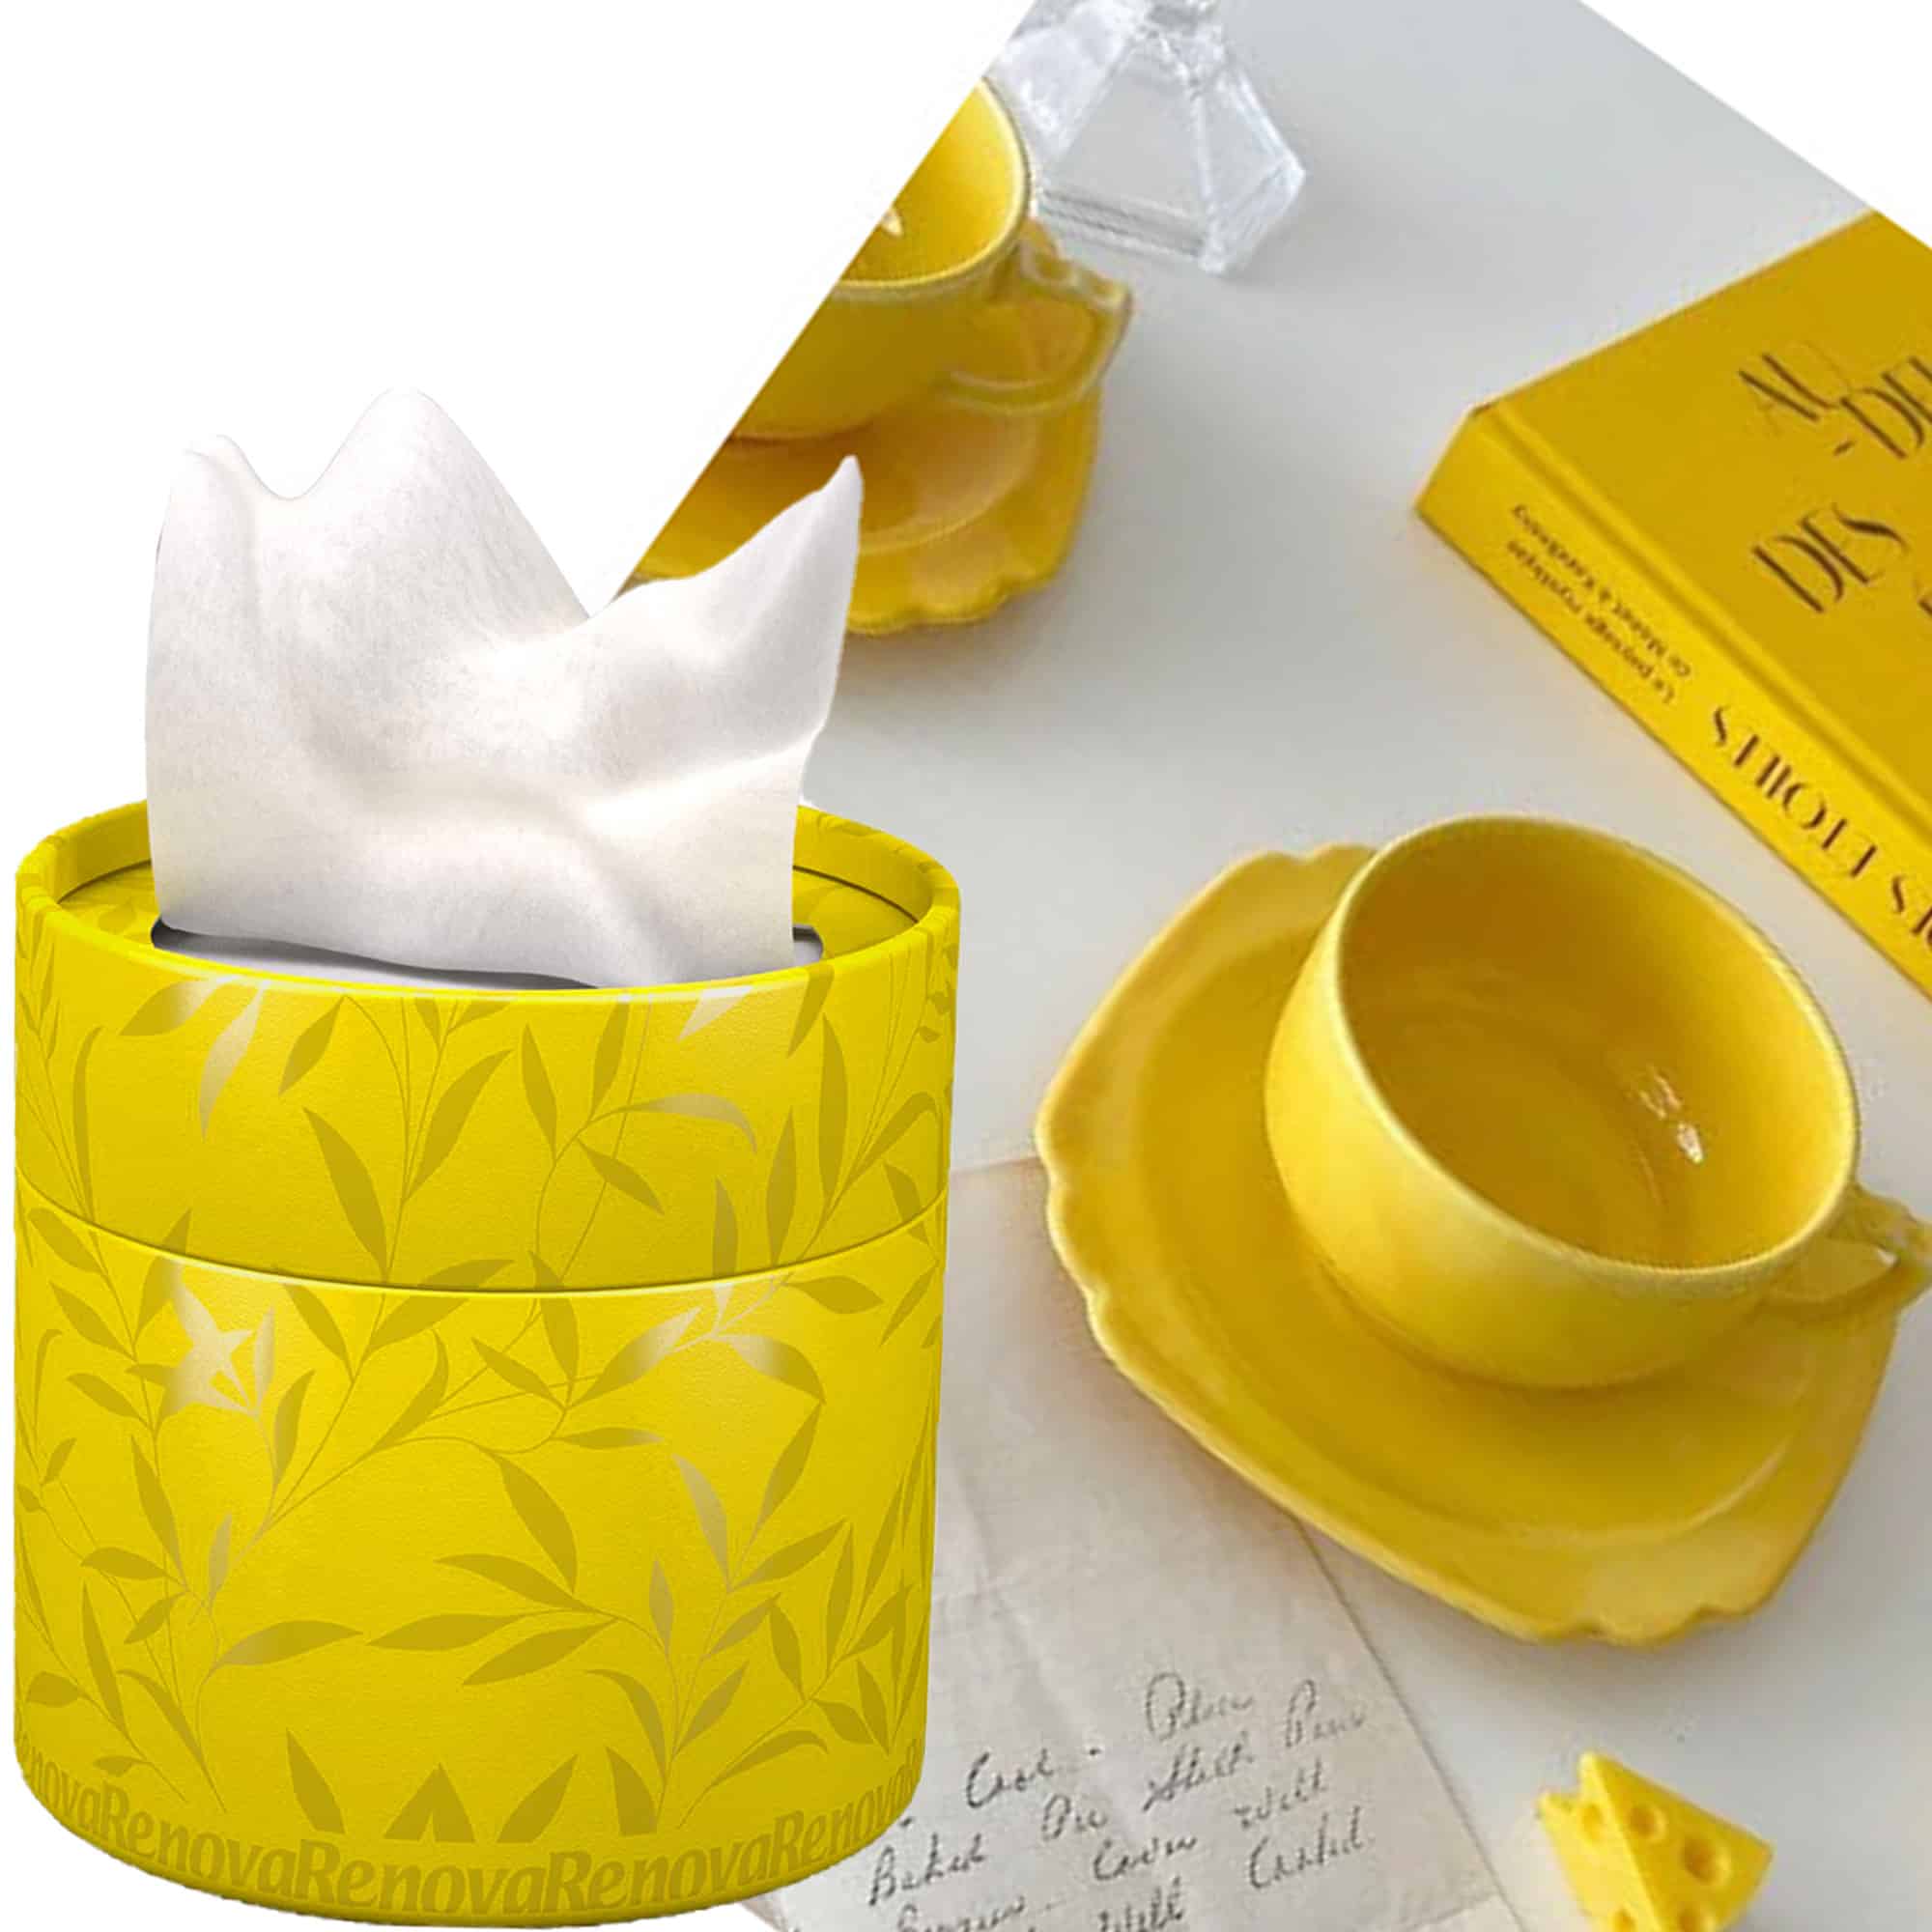 Facial Tissue Round Yellow Box, Renova